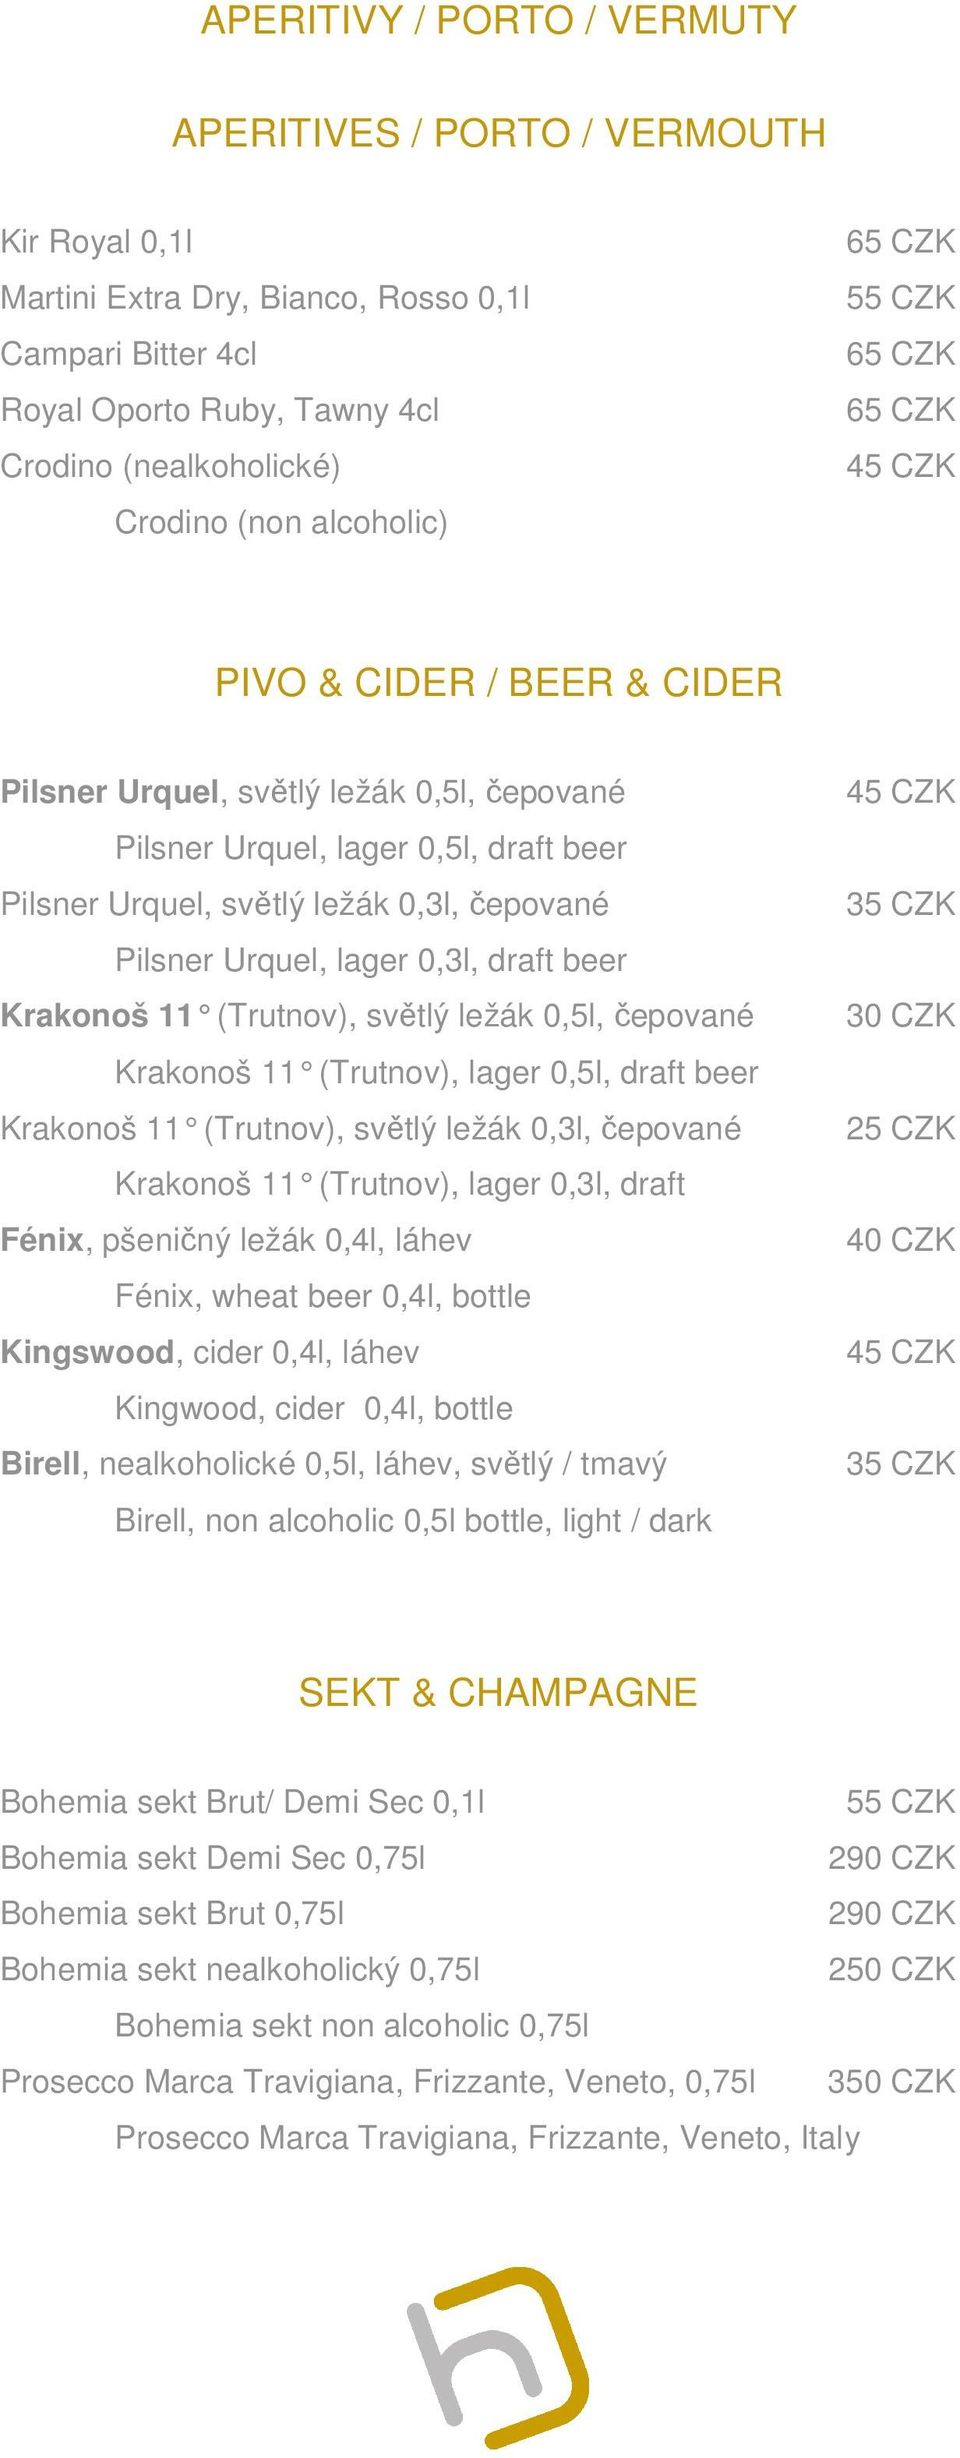 beer Krakonoš 11 (Trutnov), světlý ležák 0,5l, čepované Krakonoš 11 (Trutnov), lager 0,5l, draft beer Krakonoš 11 (Trutnov), světlý ležák 0,3l, čepované Krakonoš 11 (Trutnov), lager 0,3l, draft